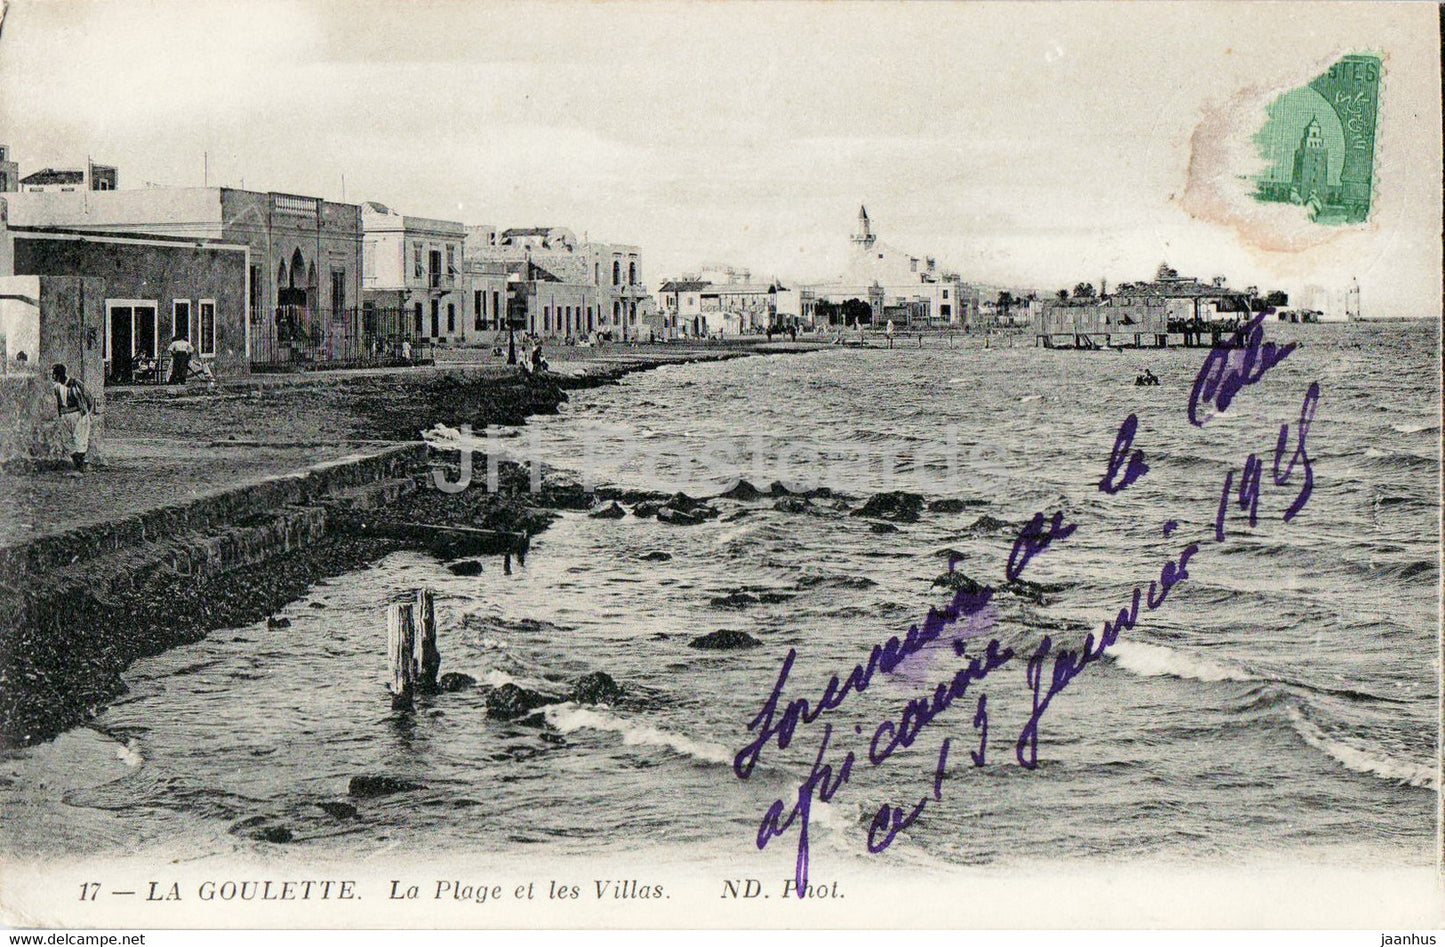 La Goulette - La Plage et les Villas - 17 - old postcard - Tunisia - used - JH Postcards